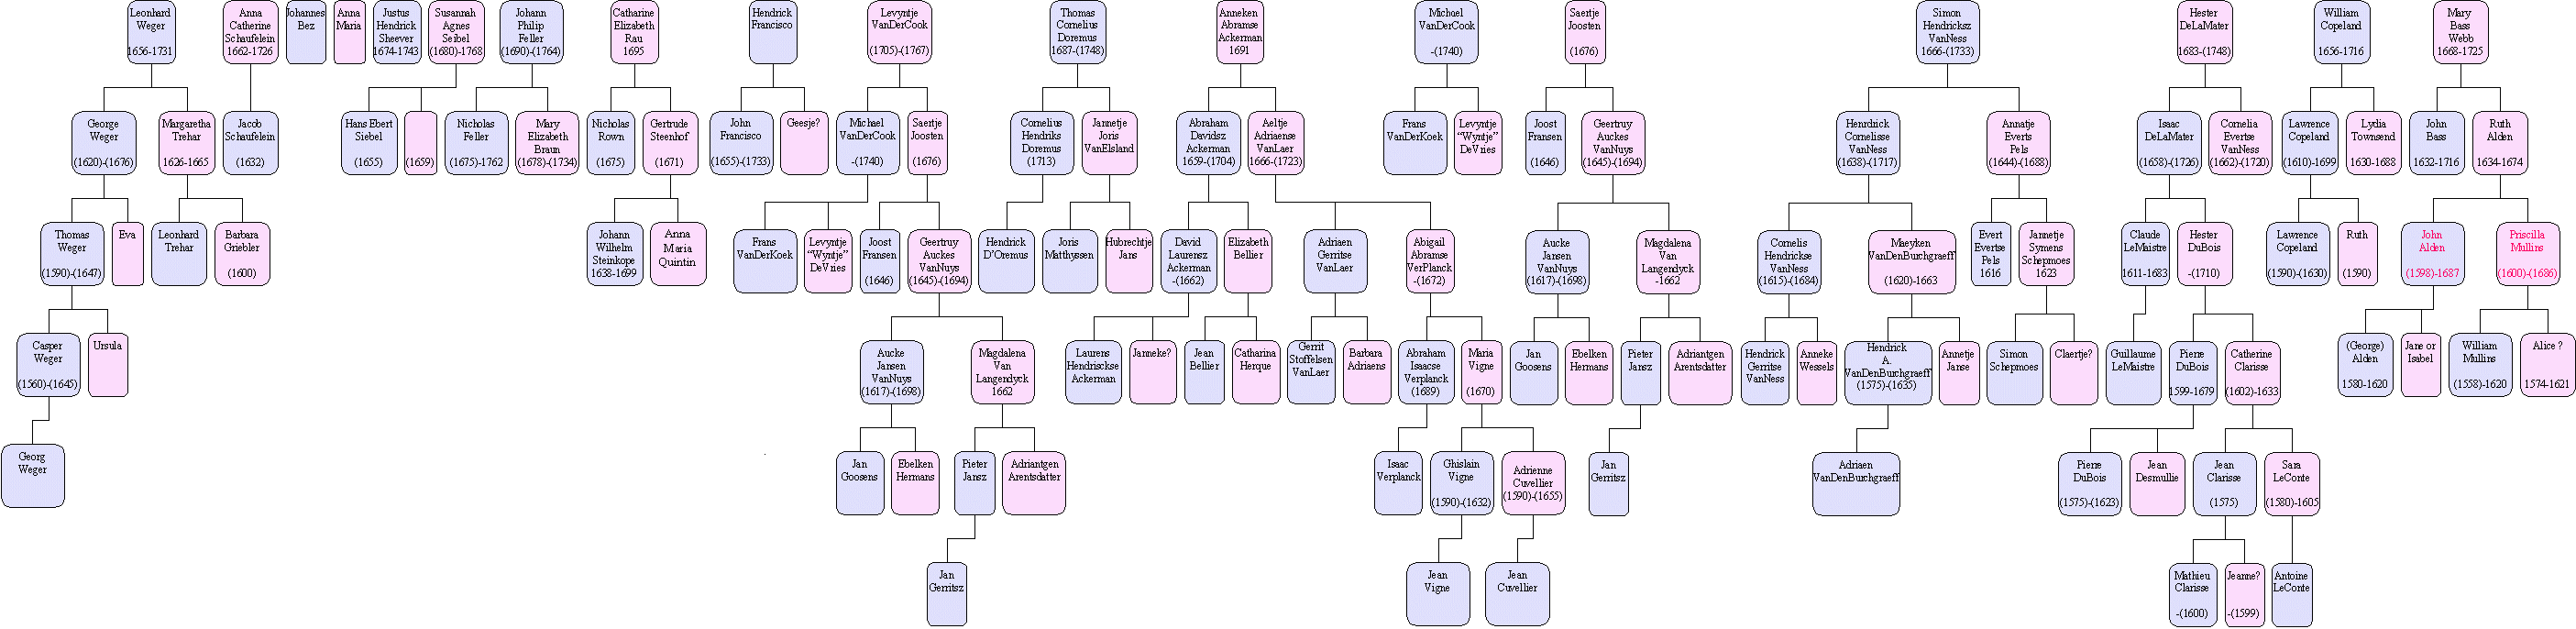 Old Genealogy